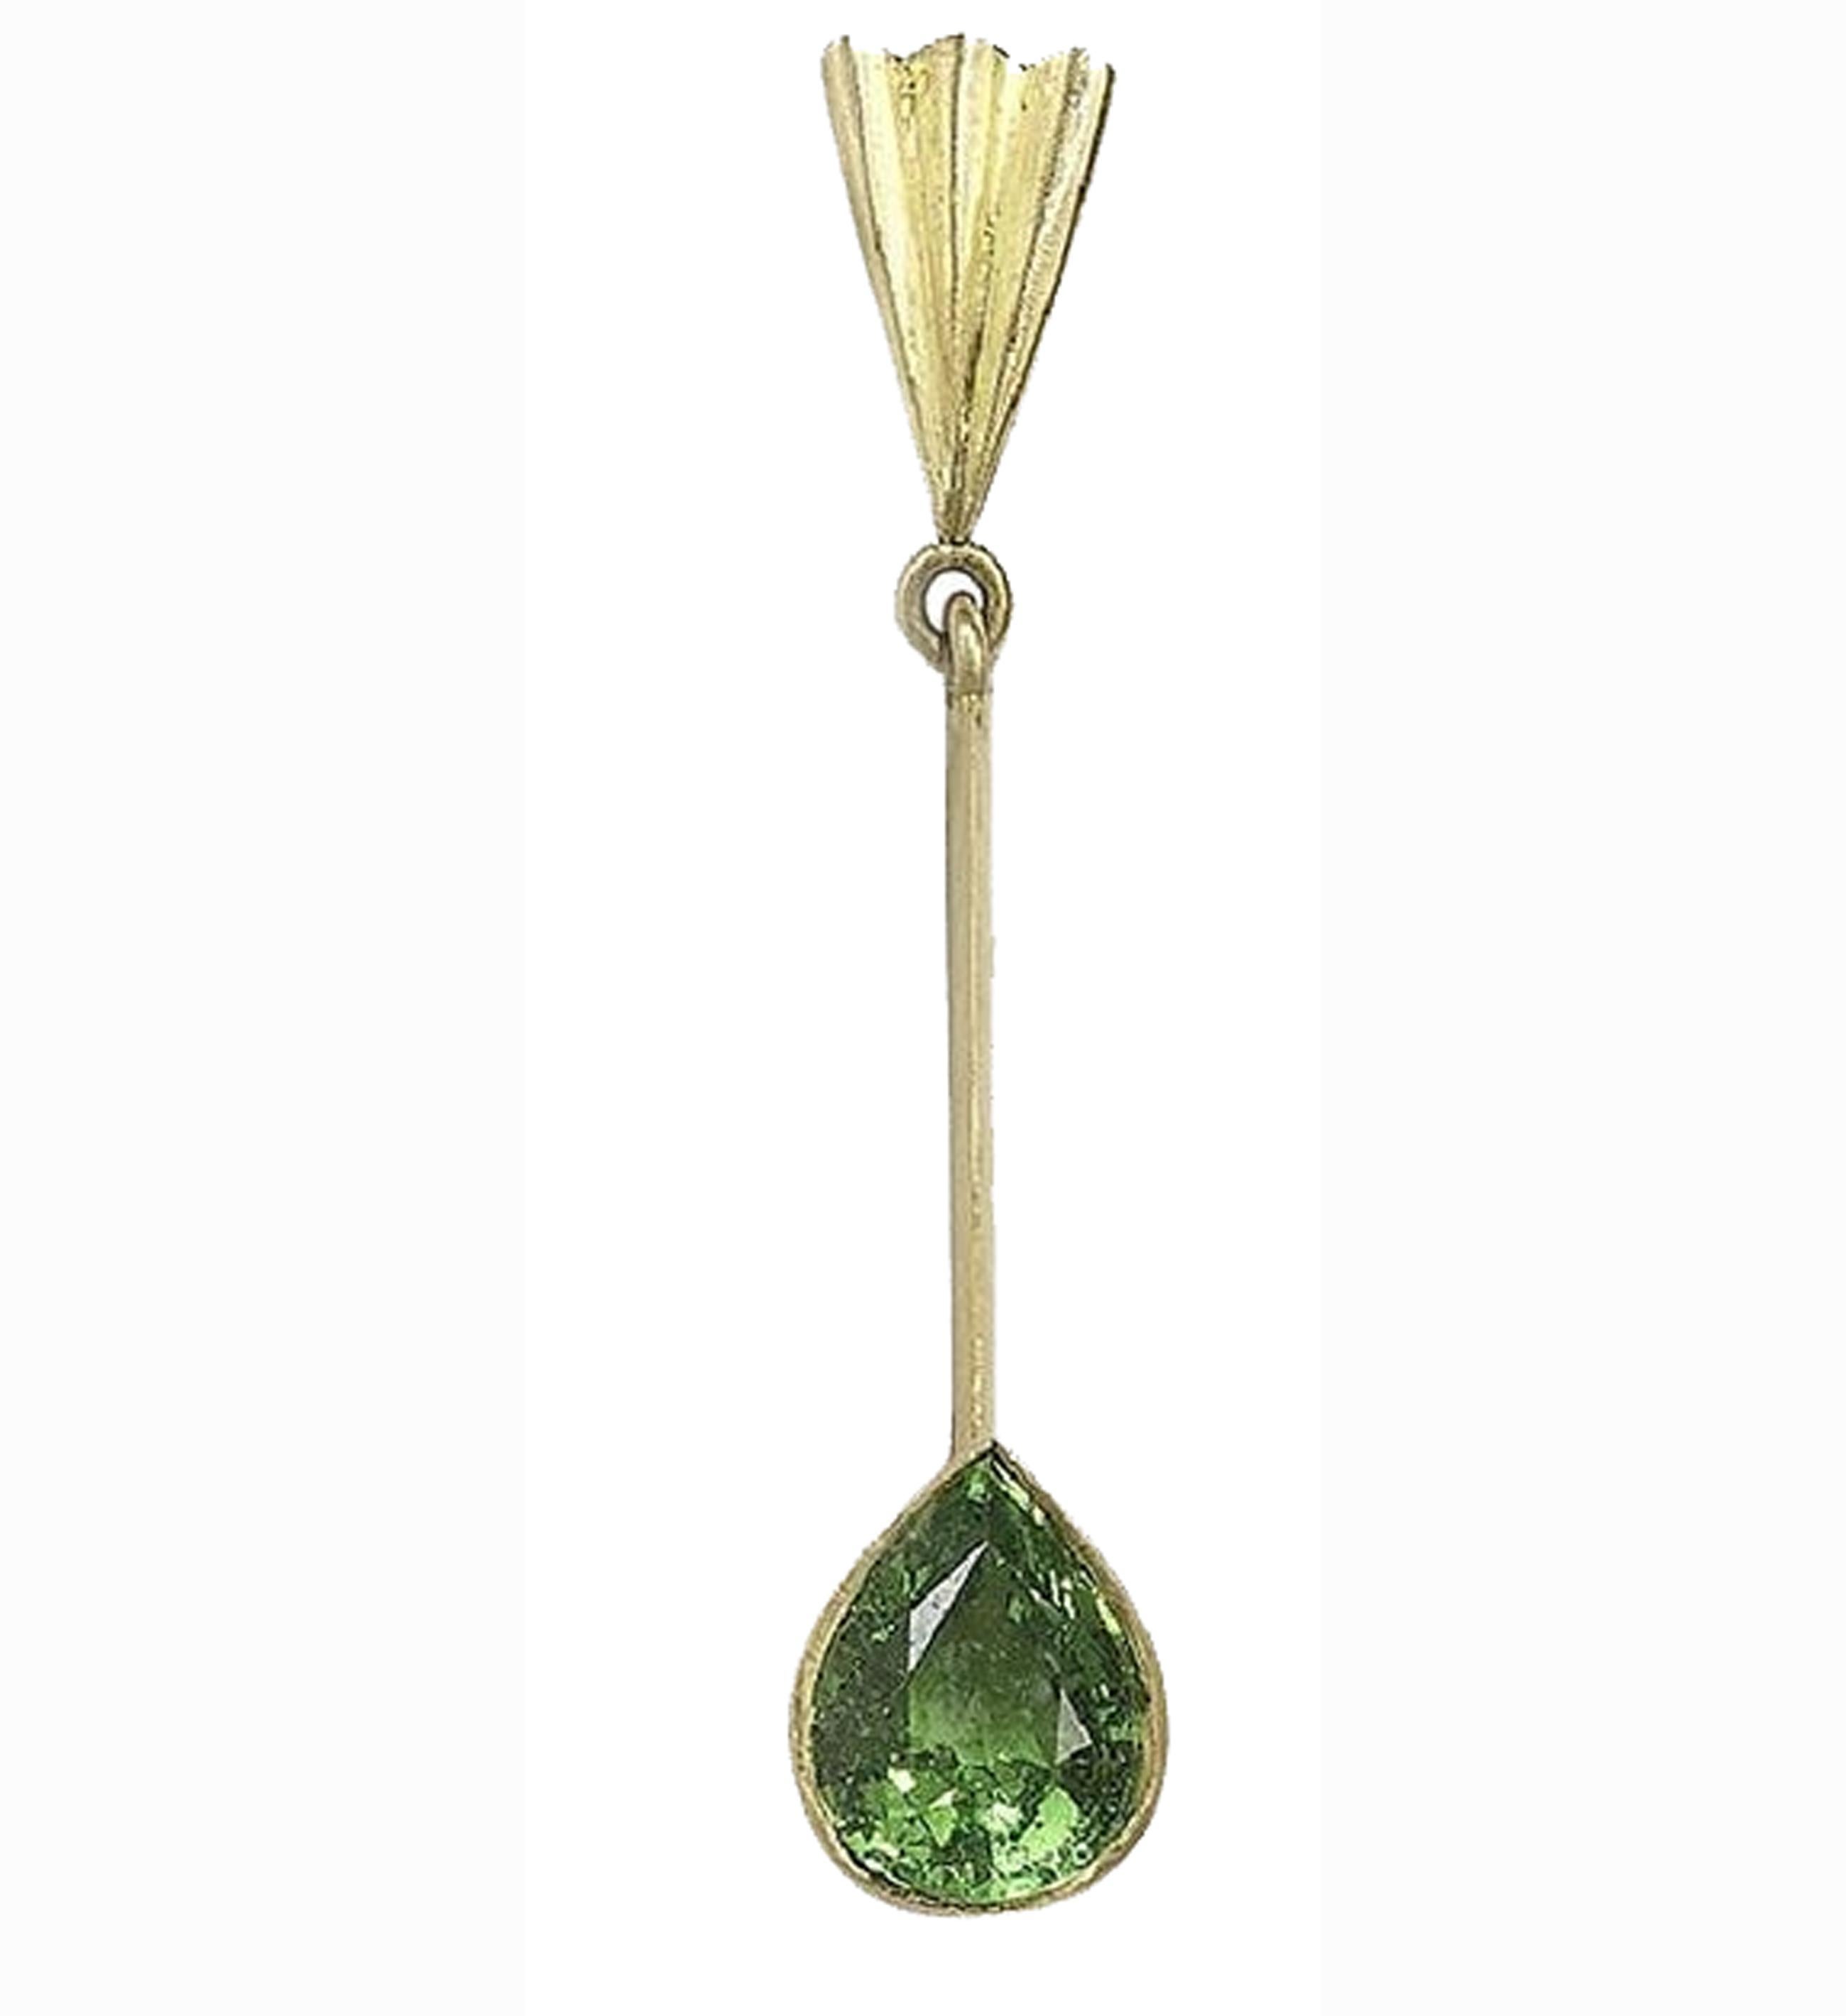 18ct yellow gold long drop earrings with fan motif tops, pear shaped tsavorite drops. Handmade by Julia Lloyd George in her London studio.
